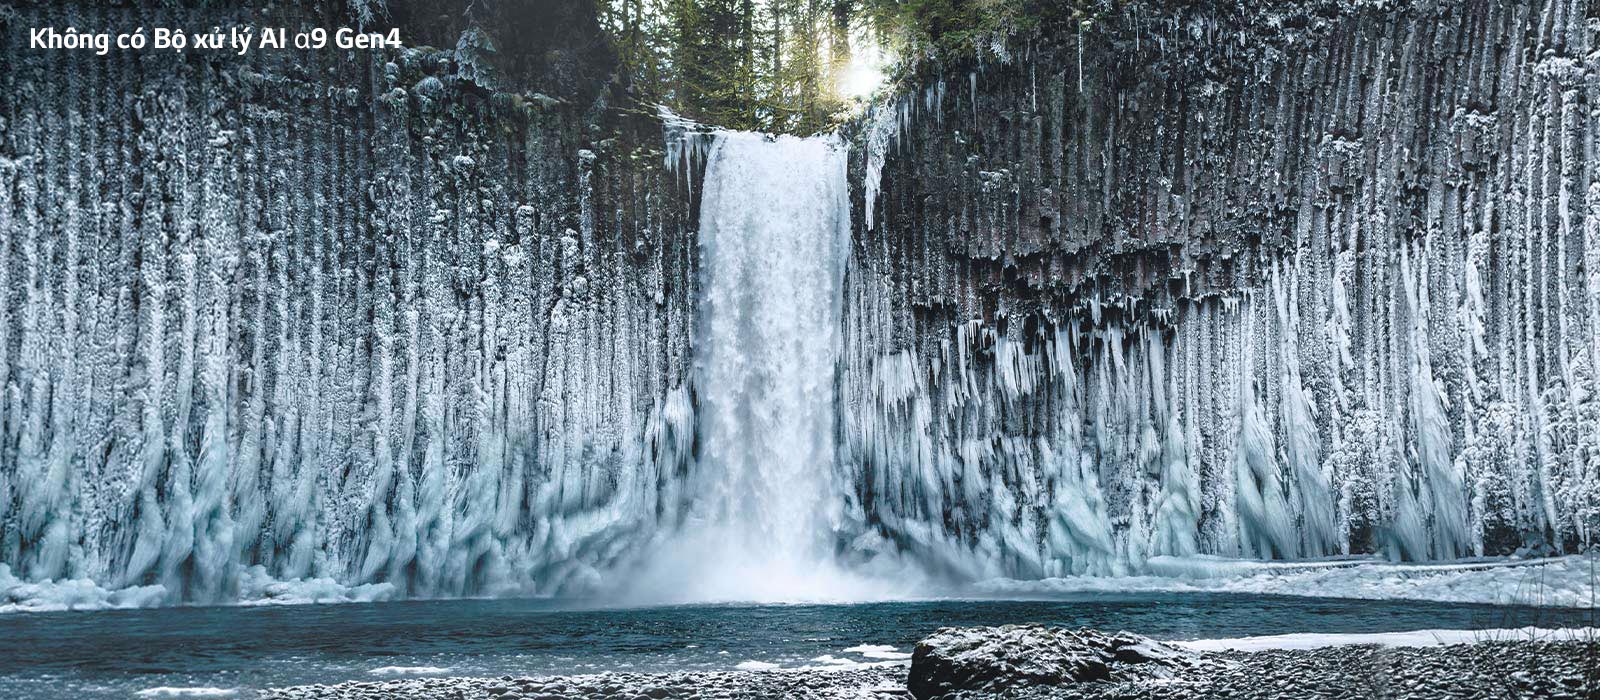 Thanh trượt so sánh chất lượng hình ảnh của một thác nước đóng băng trong rừng.